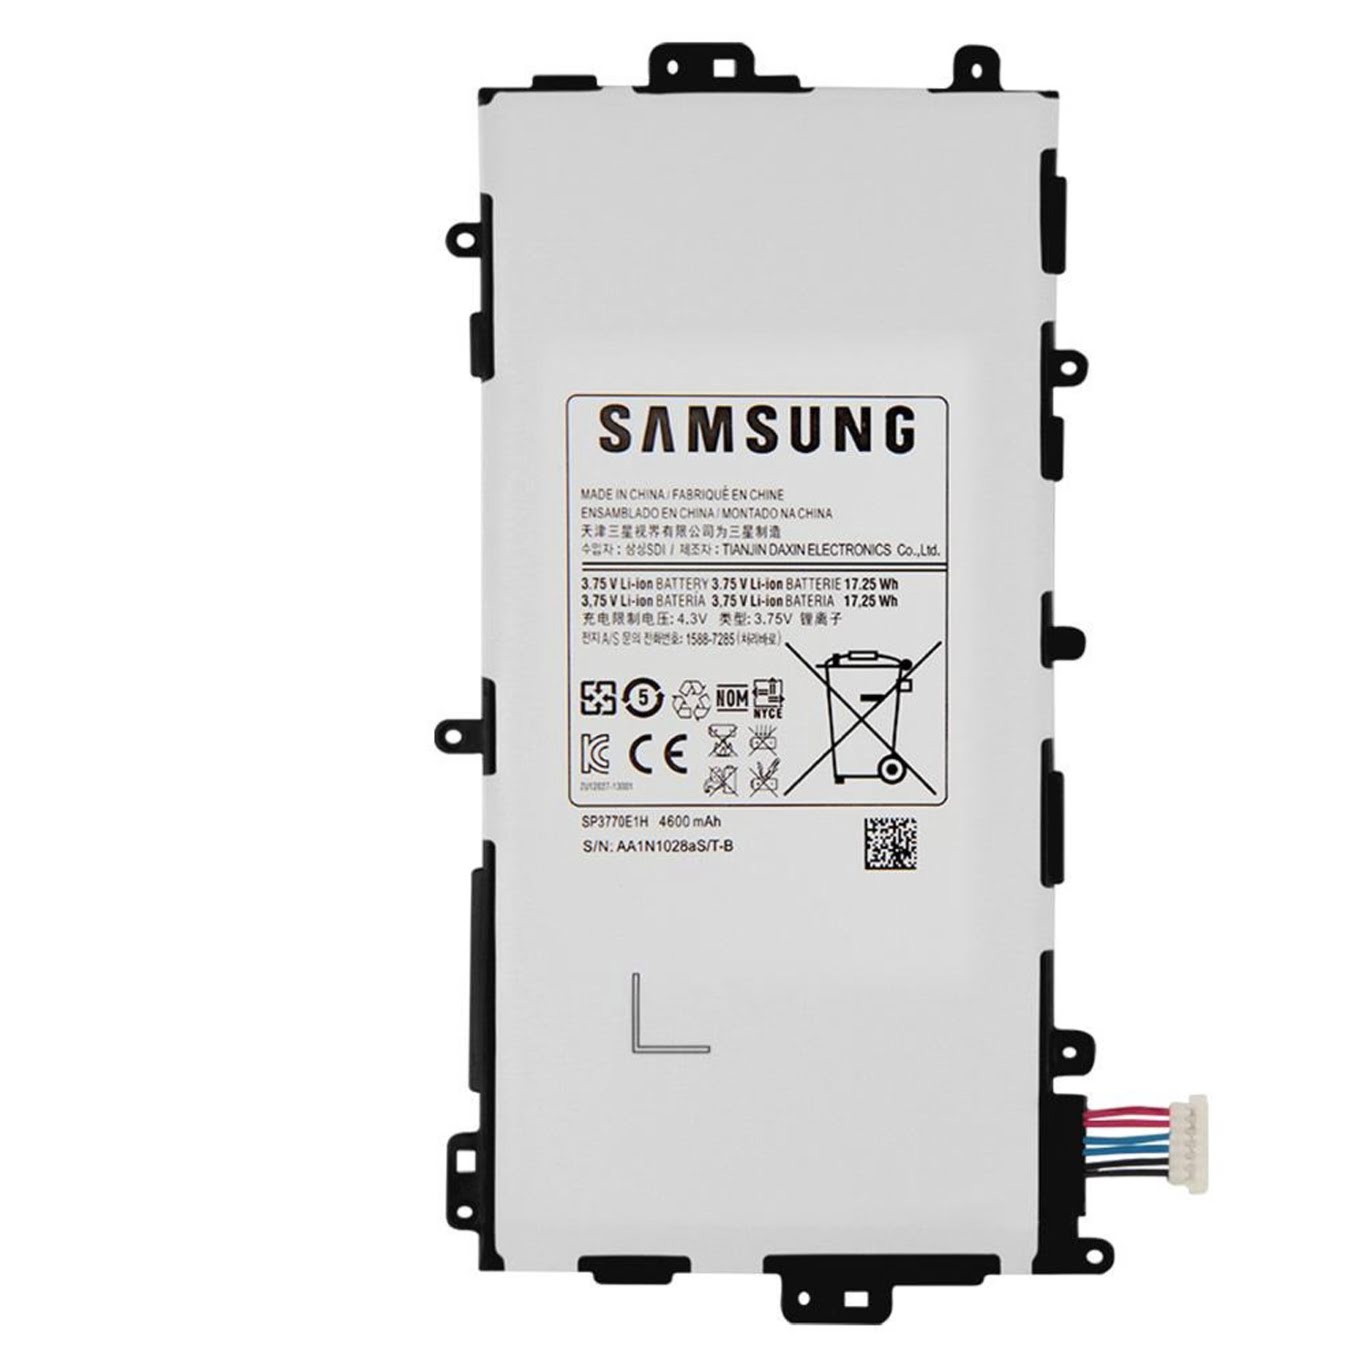 Samsung Sp3770e1h, Aa-1d405qs/t-b Laptop Akku Fuer Galaxy Note 8.0 N5110, Gt-n5120 ersatz